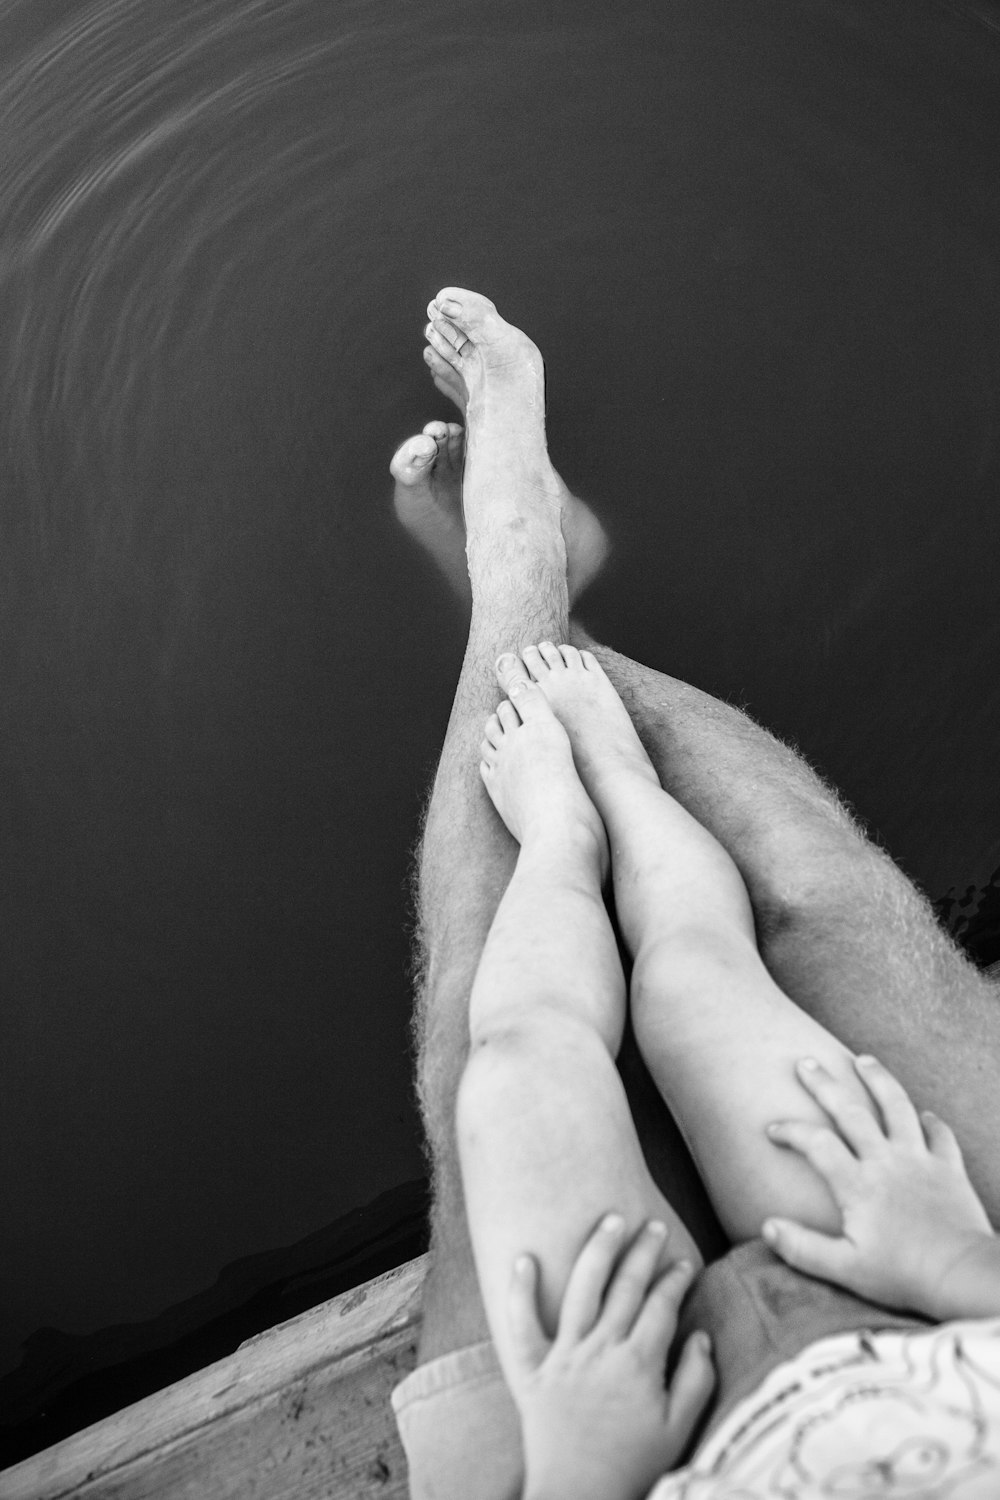 Photo en niveaux de gris des pieds d’une personne sur un plan d’eau